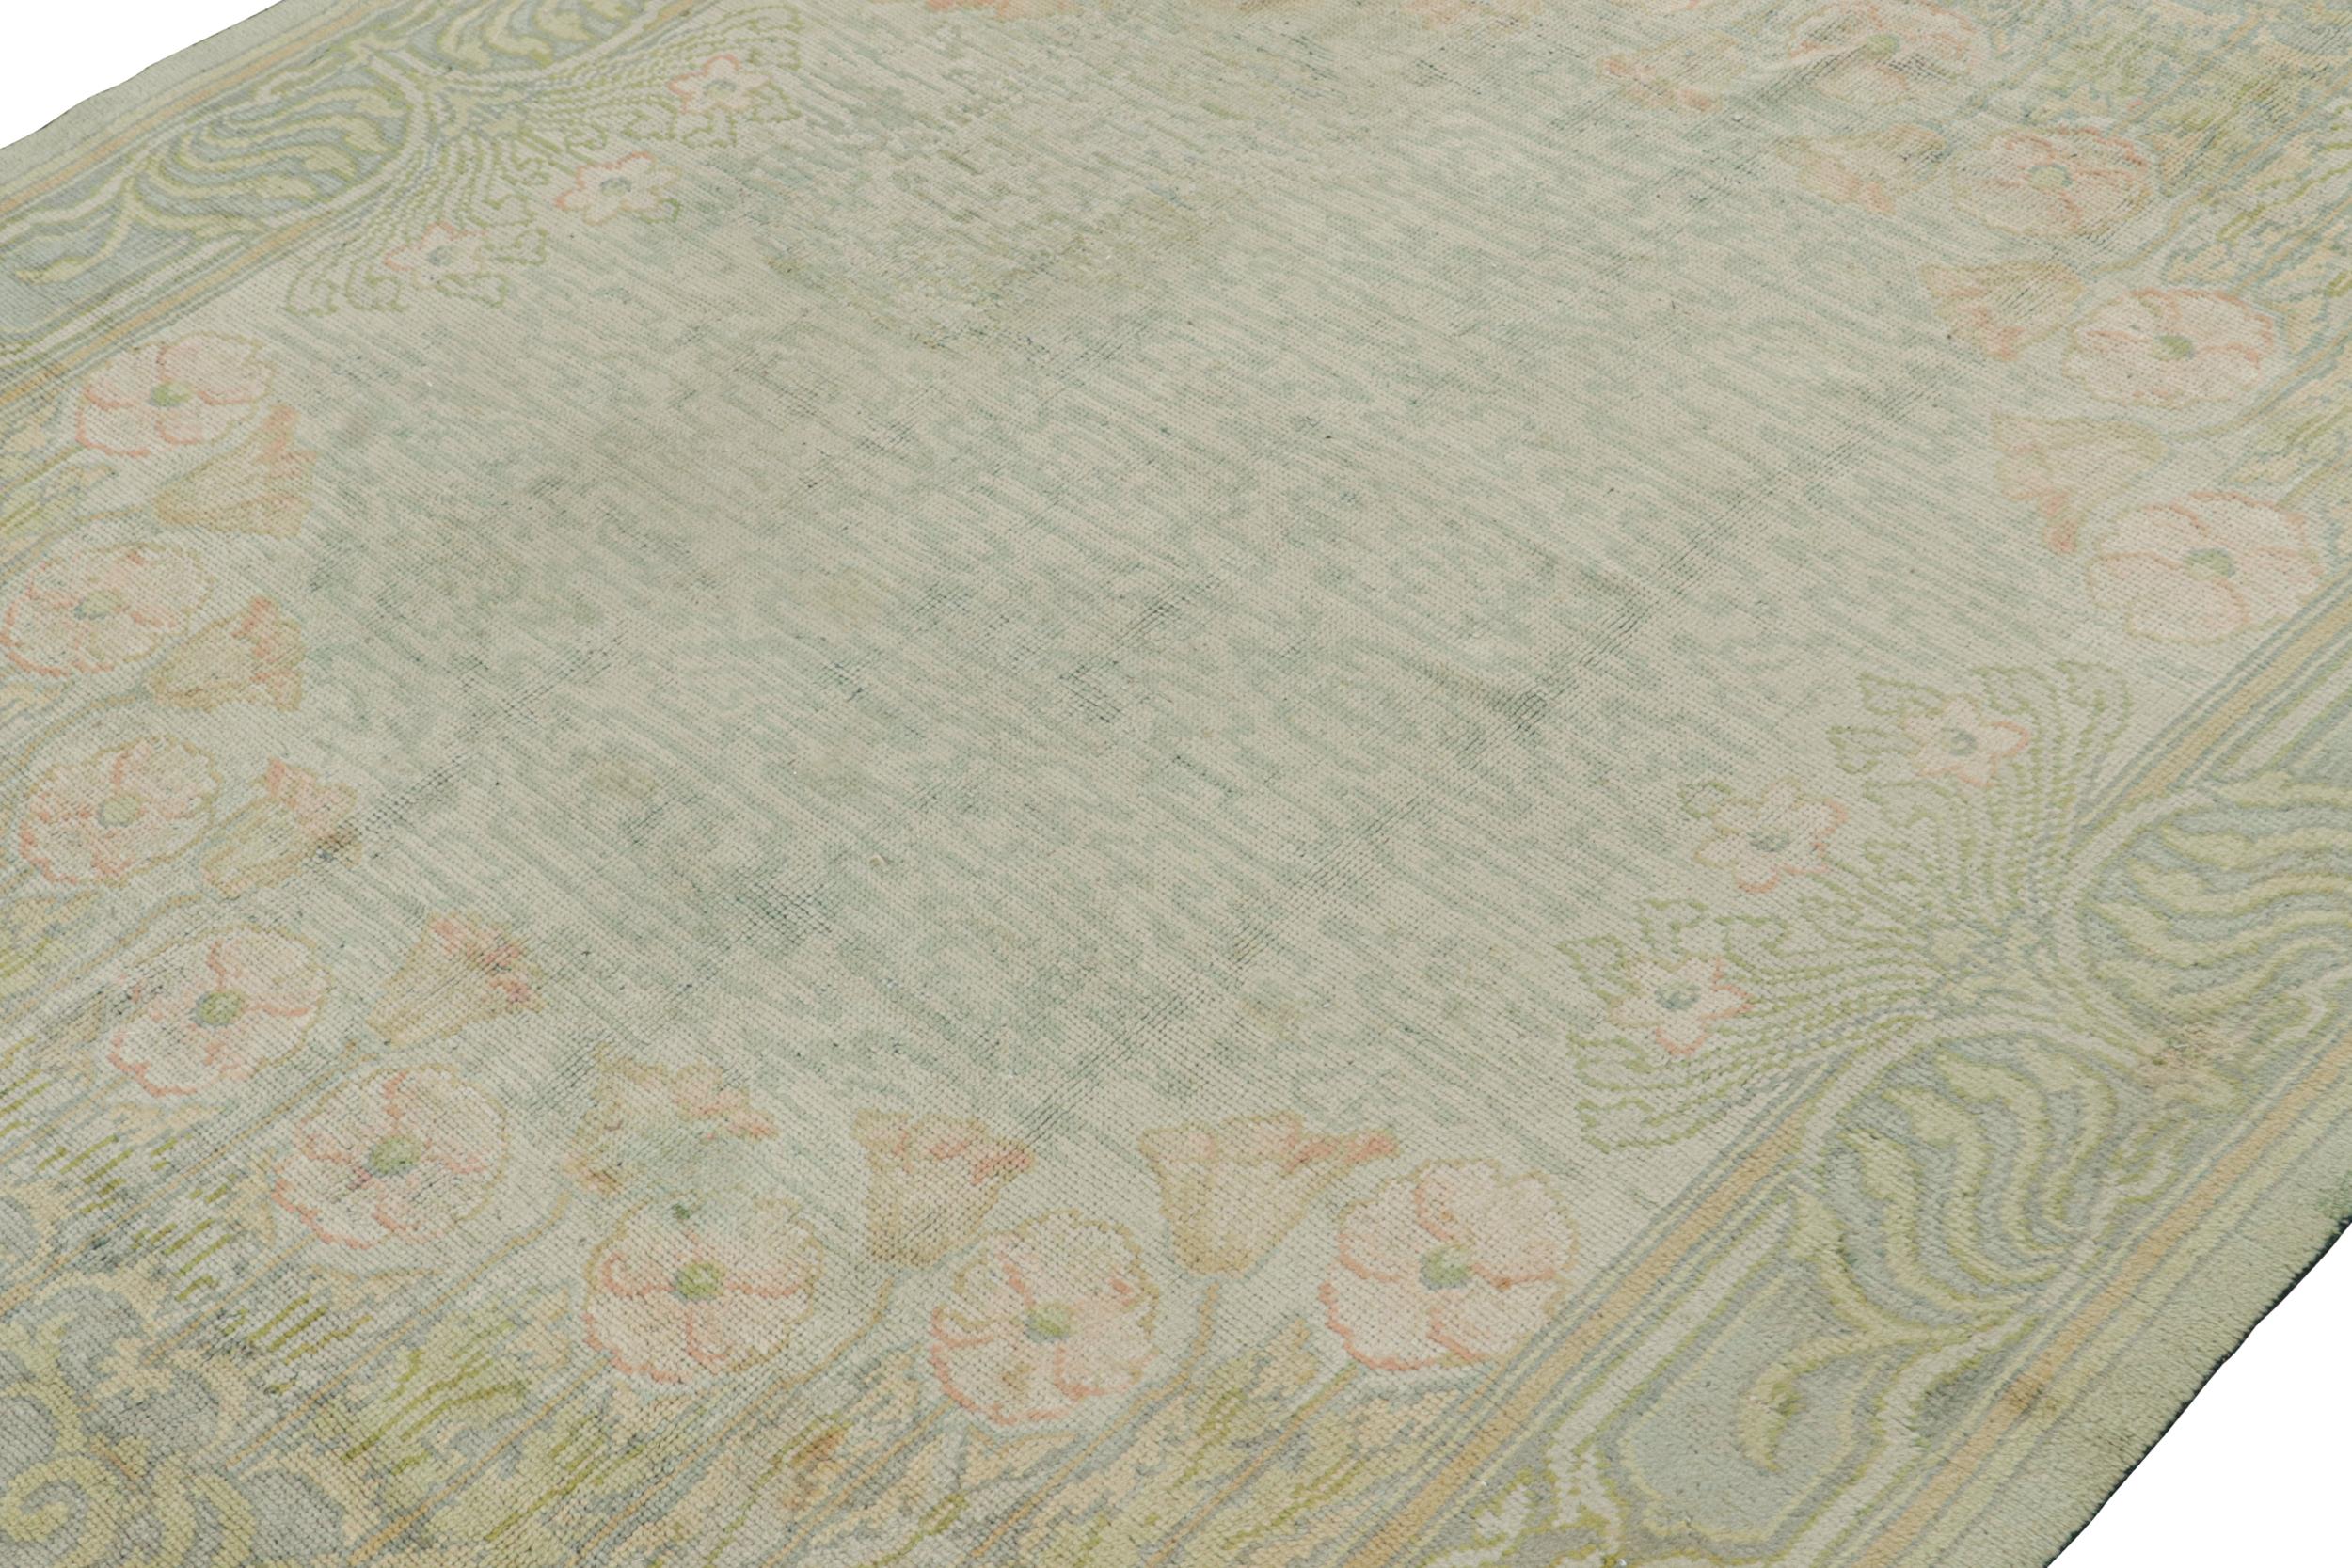 Dieser 9x11 große antike Kunsthandwerksteppich aus Wolle, handgeknüpft um 1900-1910, ist vermutlich ein seltenes Werk von C.F.A. Voysey.

Über das Design: 

Es wird angenommen, dass dieser Voysey-Teppich aus Irland stammt, da er Ähnlichkeiten mit